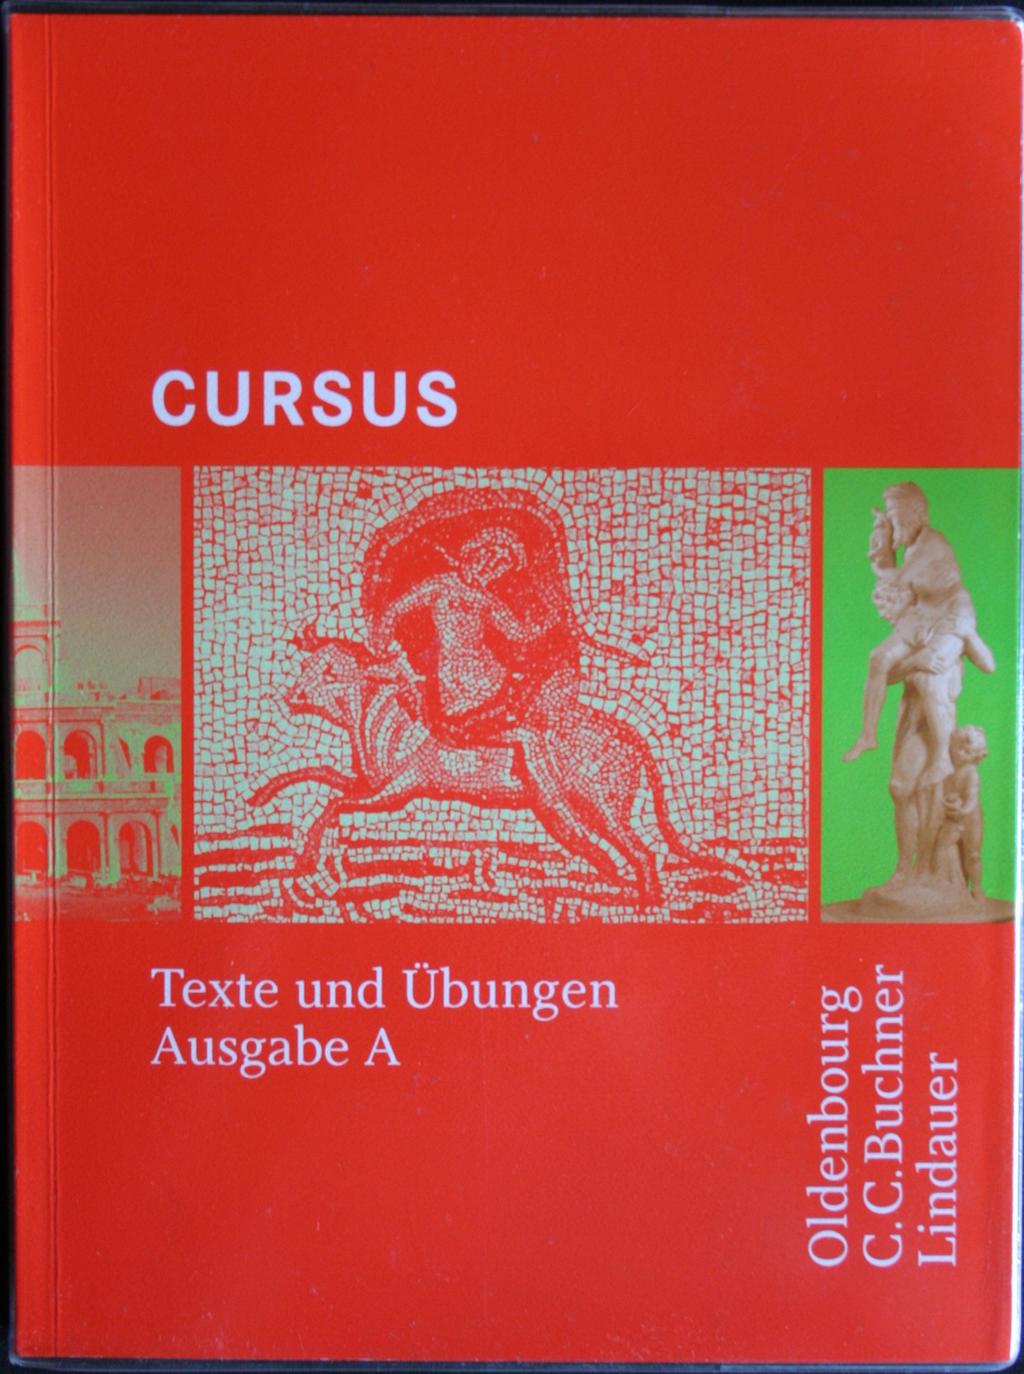 Unterrichtsmaterialien für das Fach Latein Lehrbuch Cursus A von Buchner, 1 Band Textband Grammatik zusätzliche